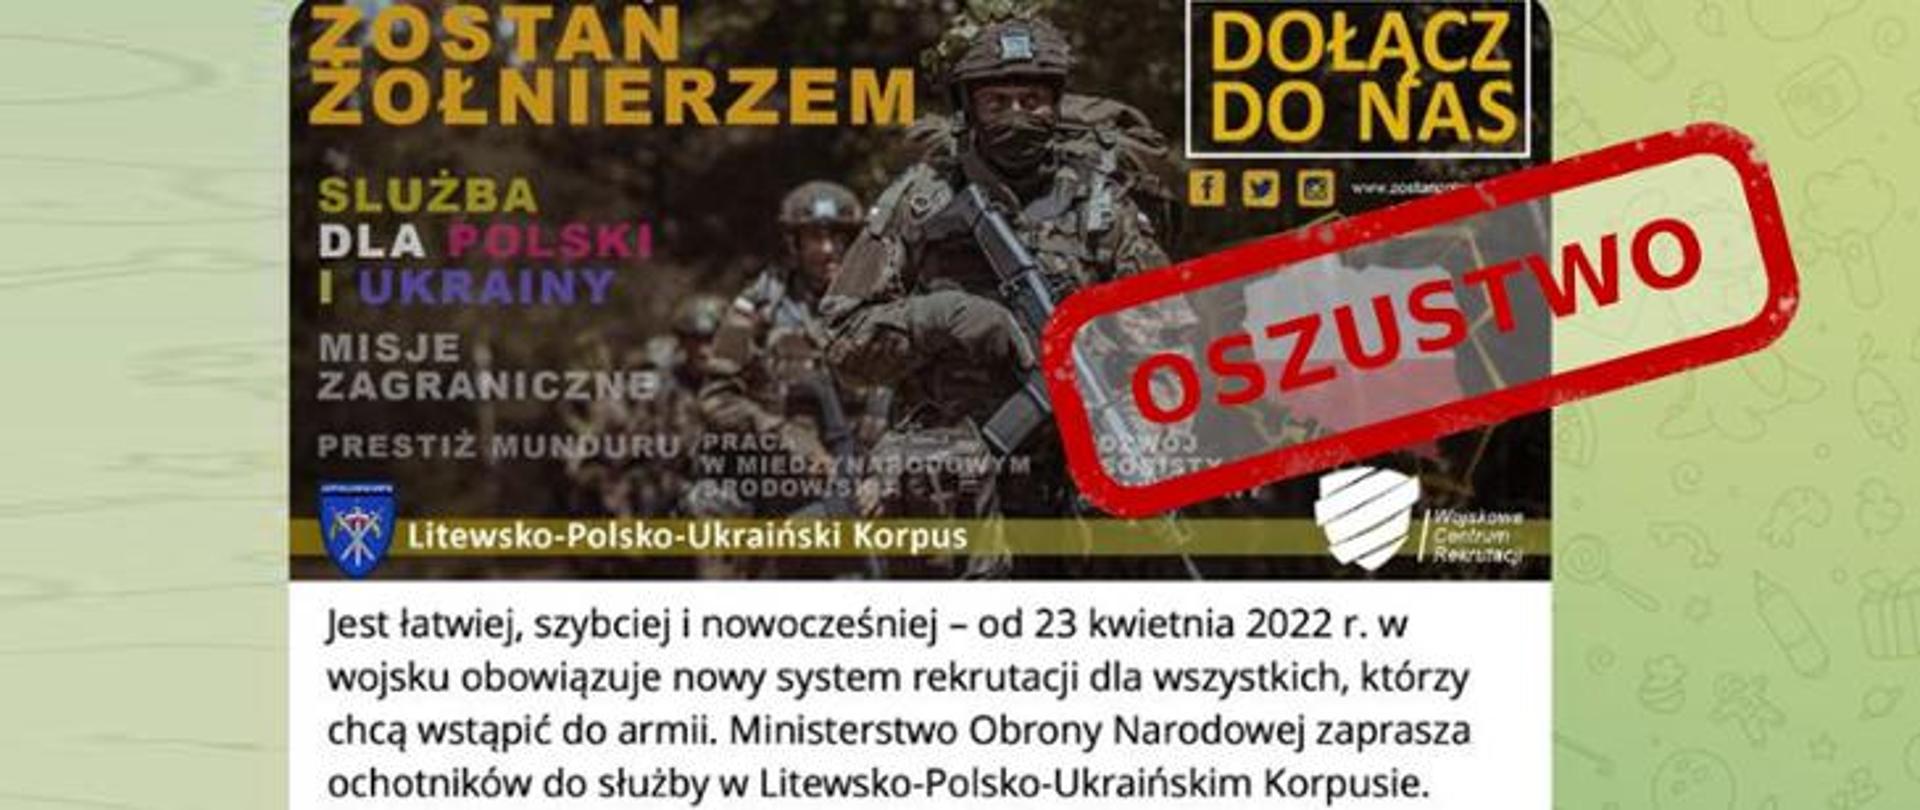 Trwa duża kampania dezinformacyjna dotycząca rzekomej rekrutacji polskich ochotników do walki na terenie Ukrainy